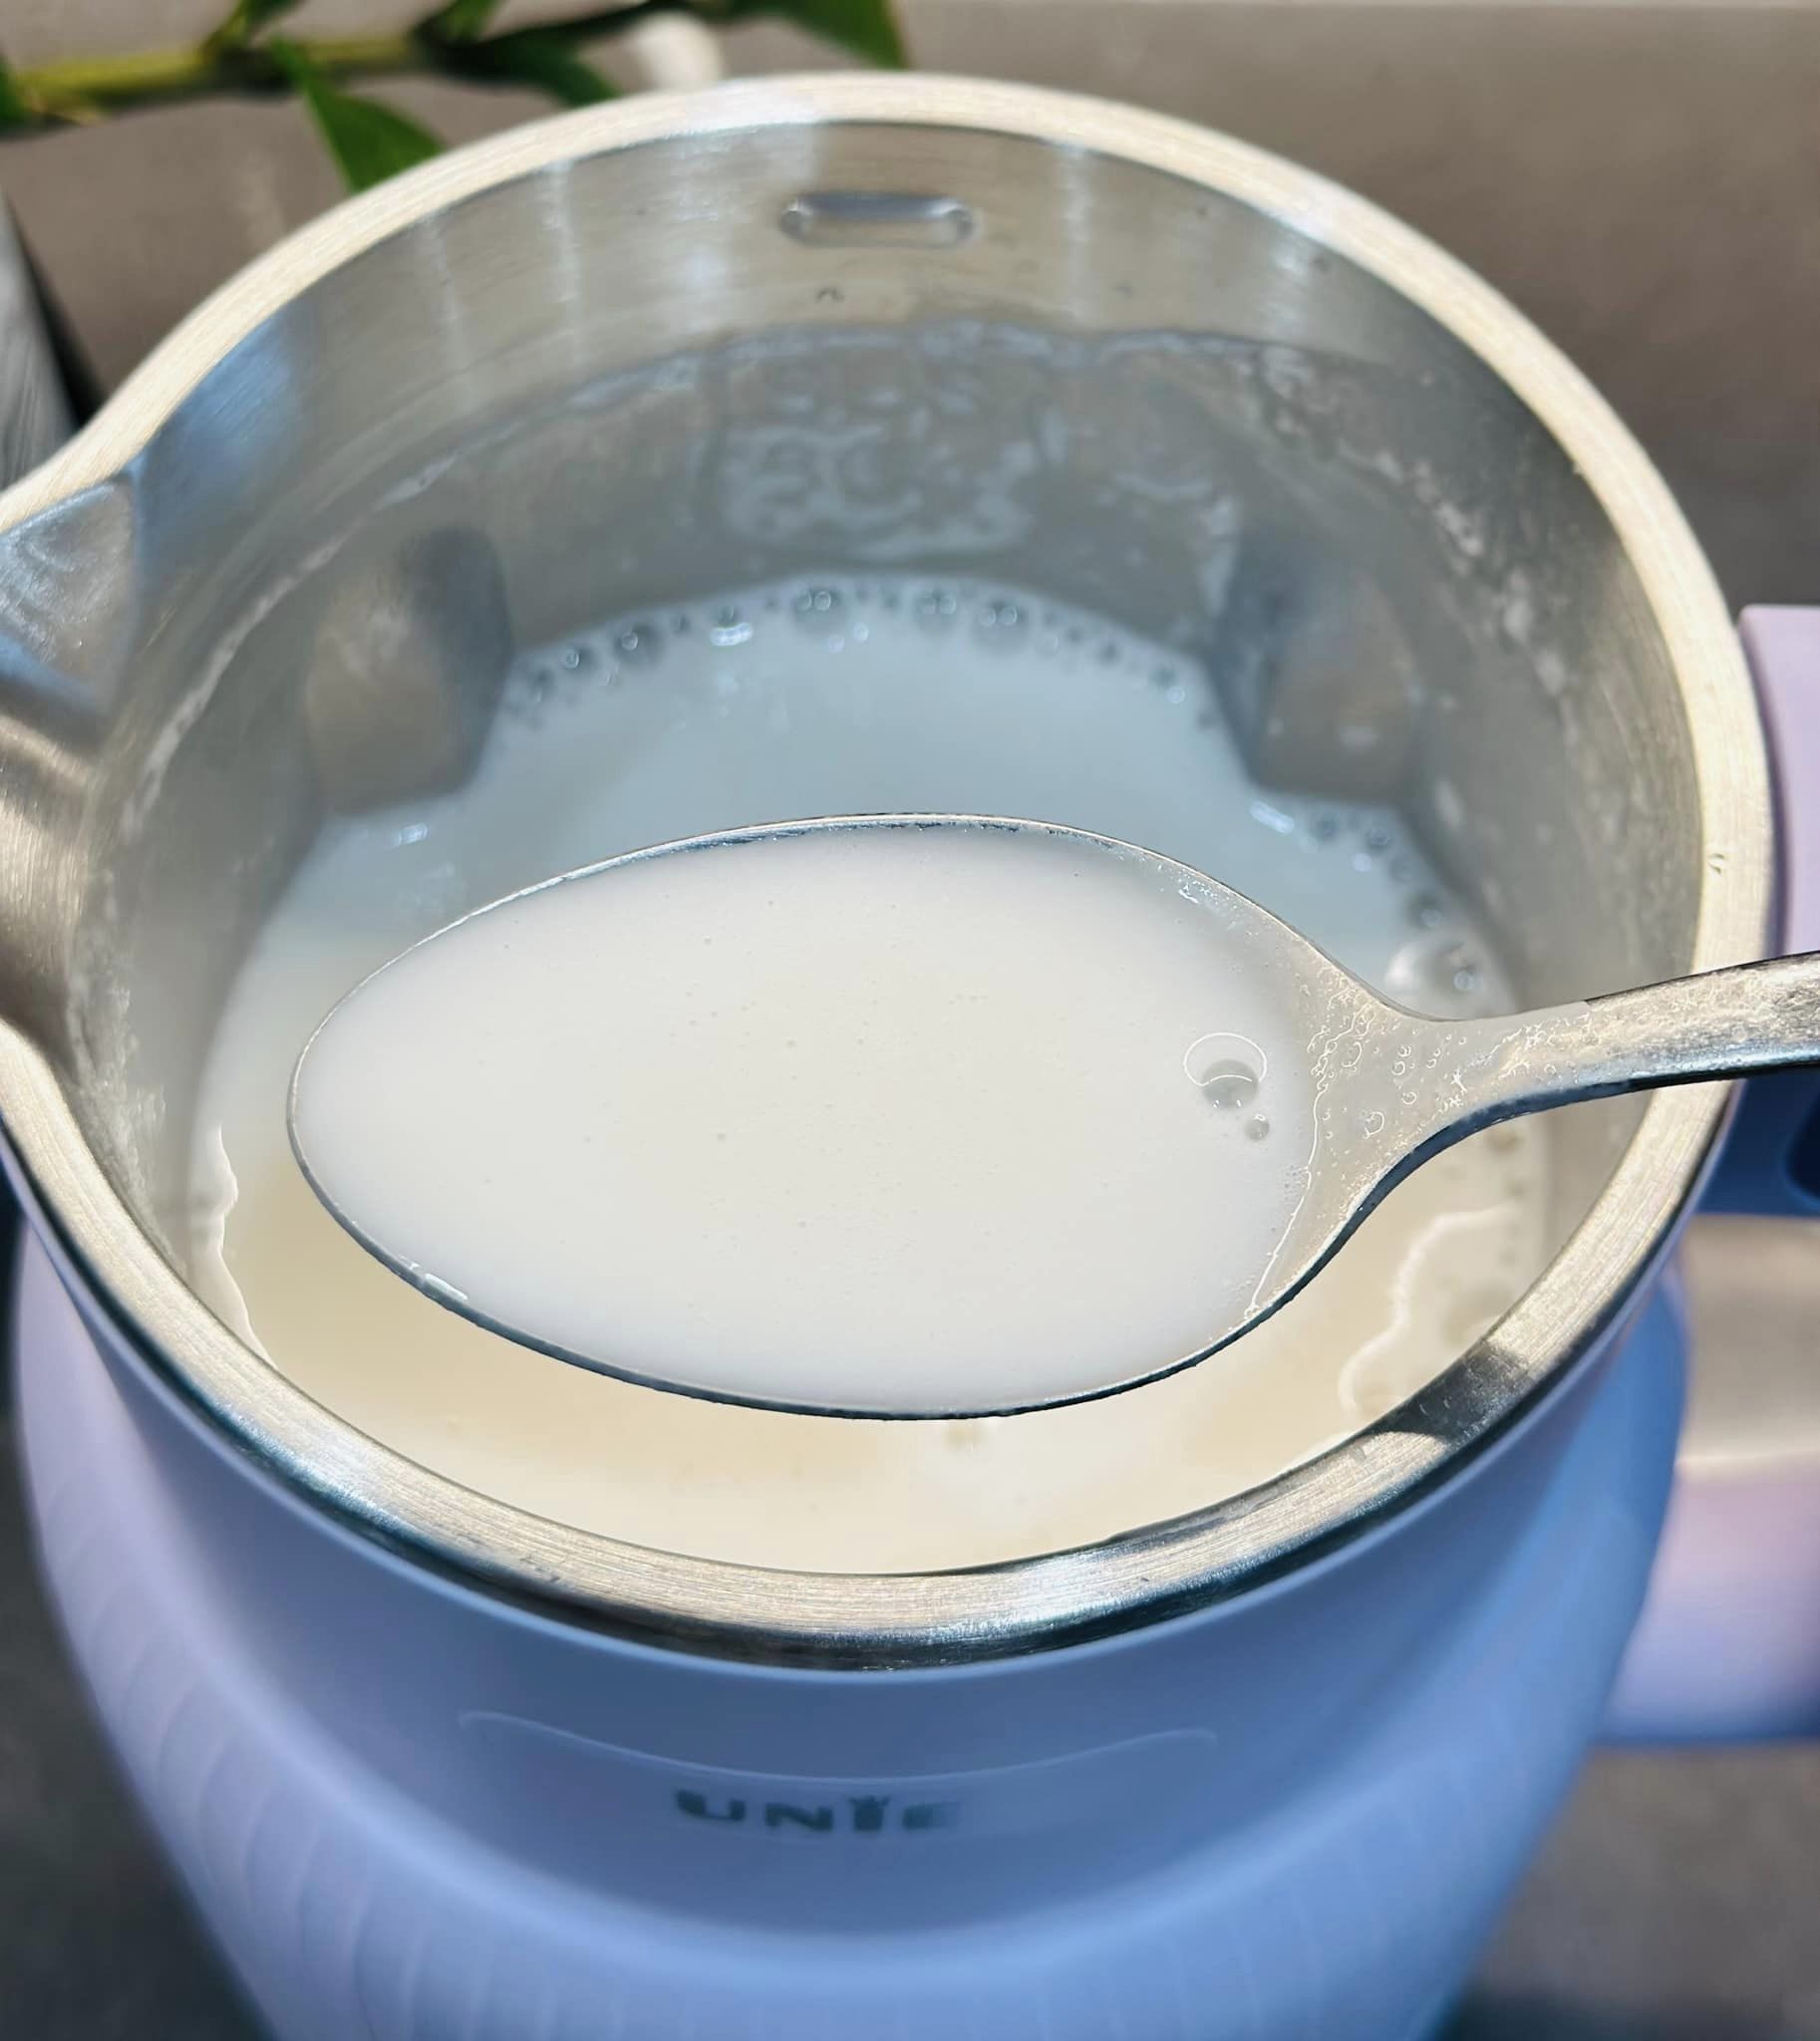 Trà sữa trân châu phiên bản sữa hạt, đảm bảo thơm ngon béo ngậy - Ảnh 3.